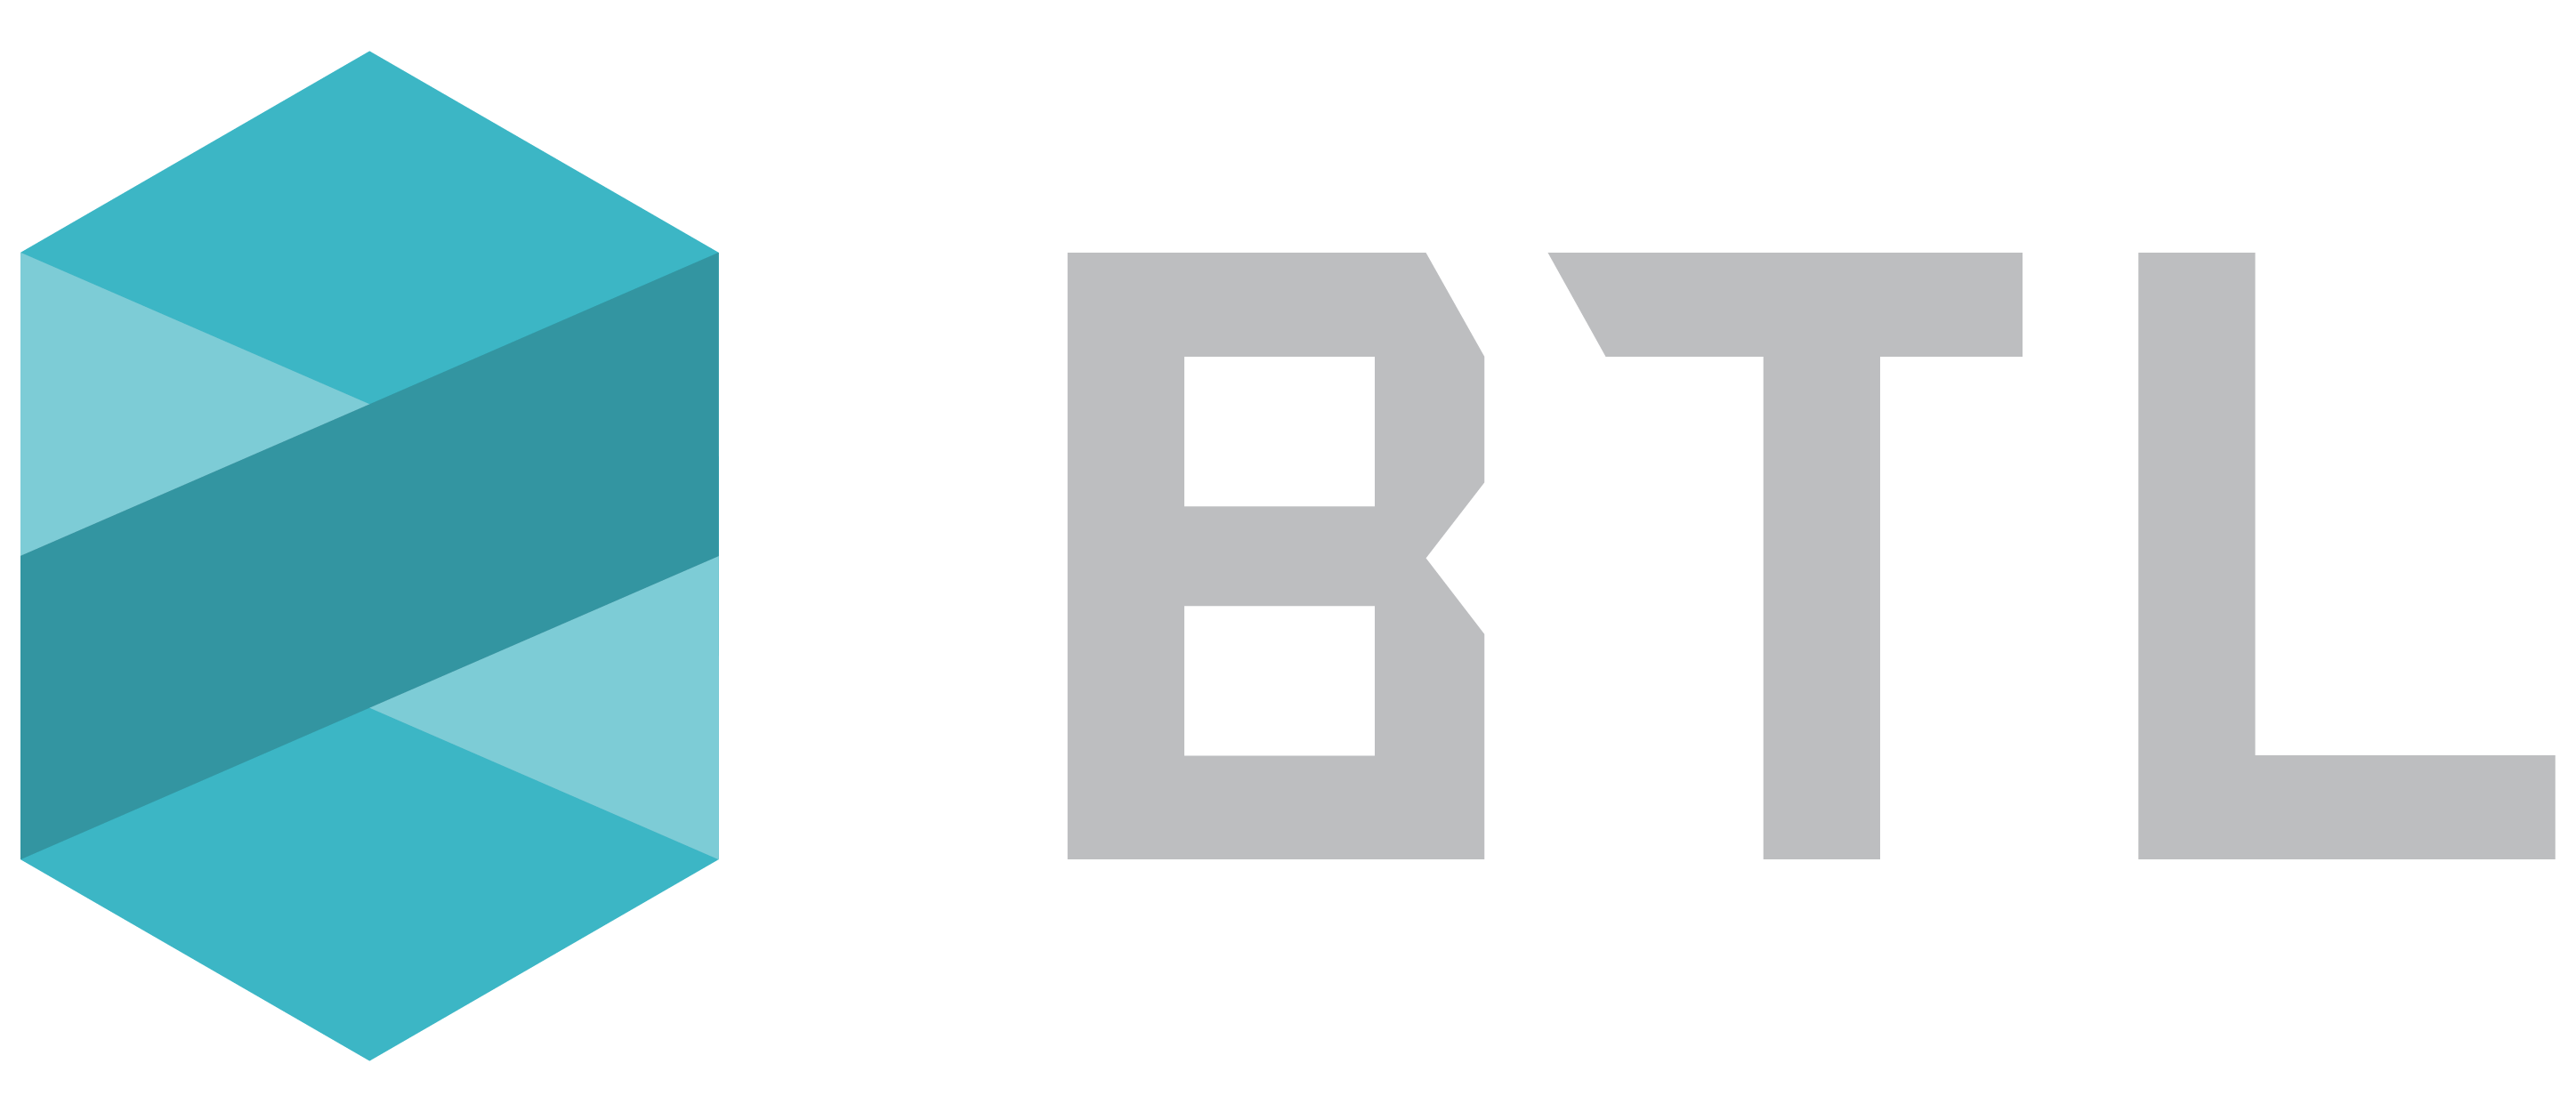 BTL Logo - AltFi - BTL Group LTD